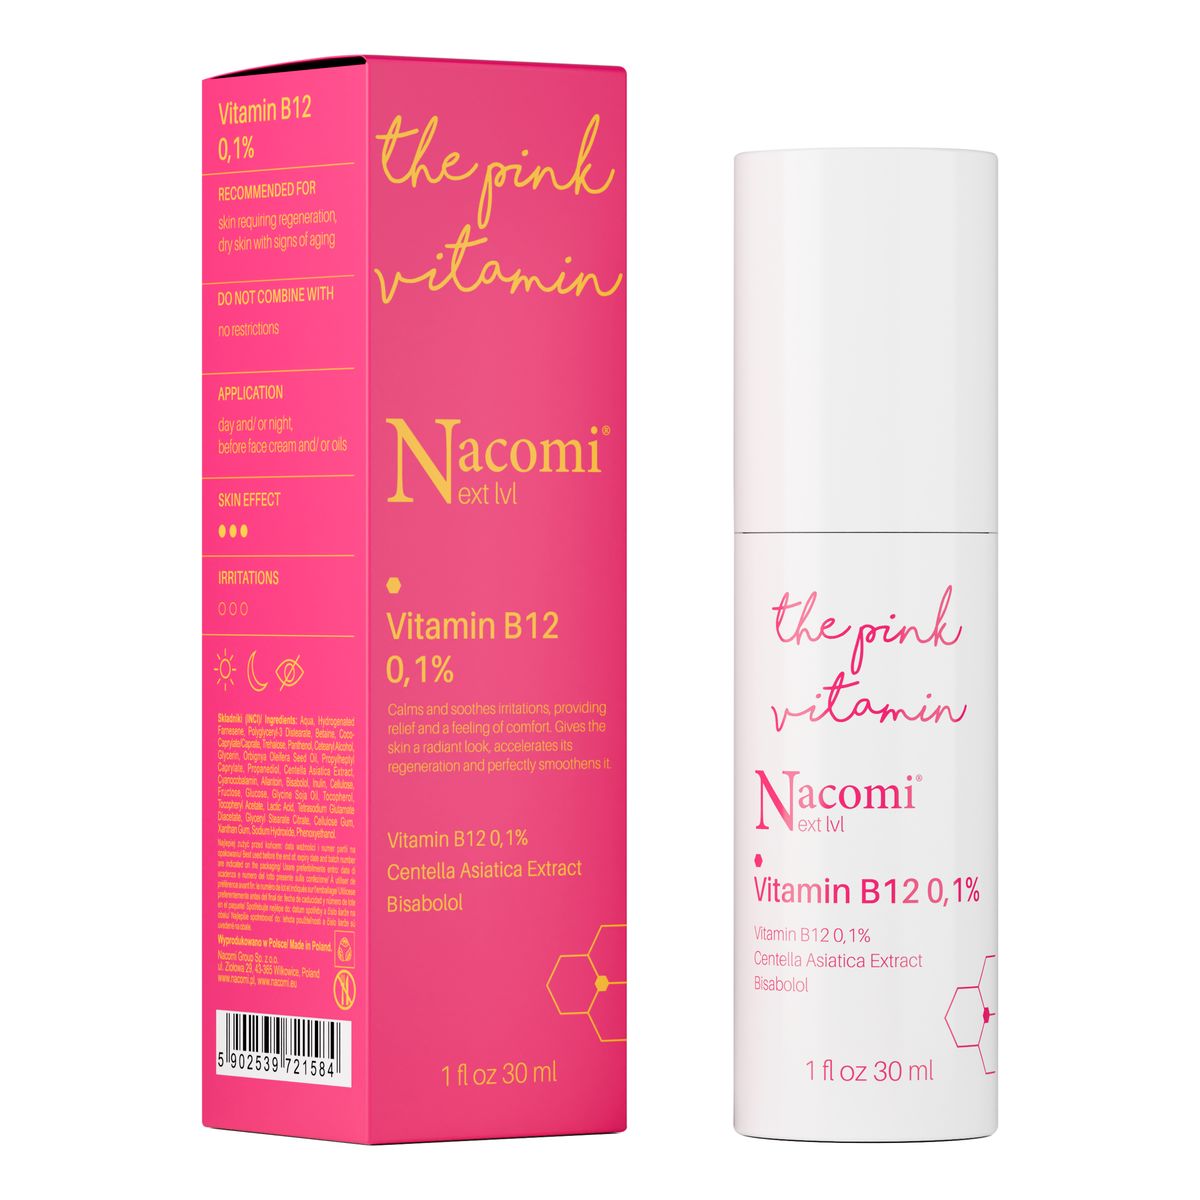 Nacomi Next Level Serum Witamina B12 0,1% 30ml